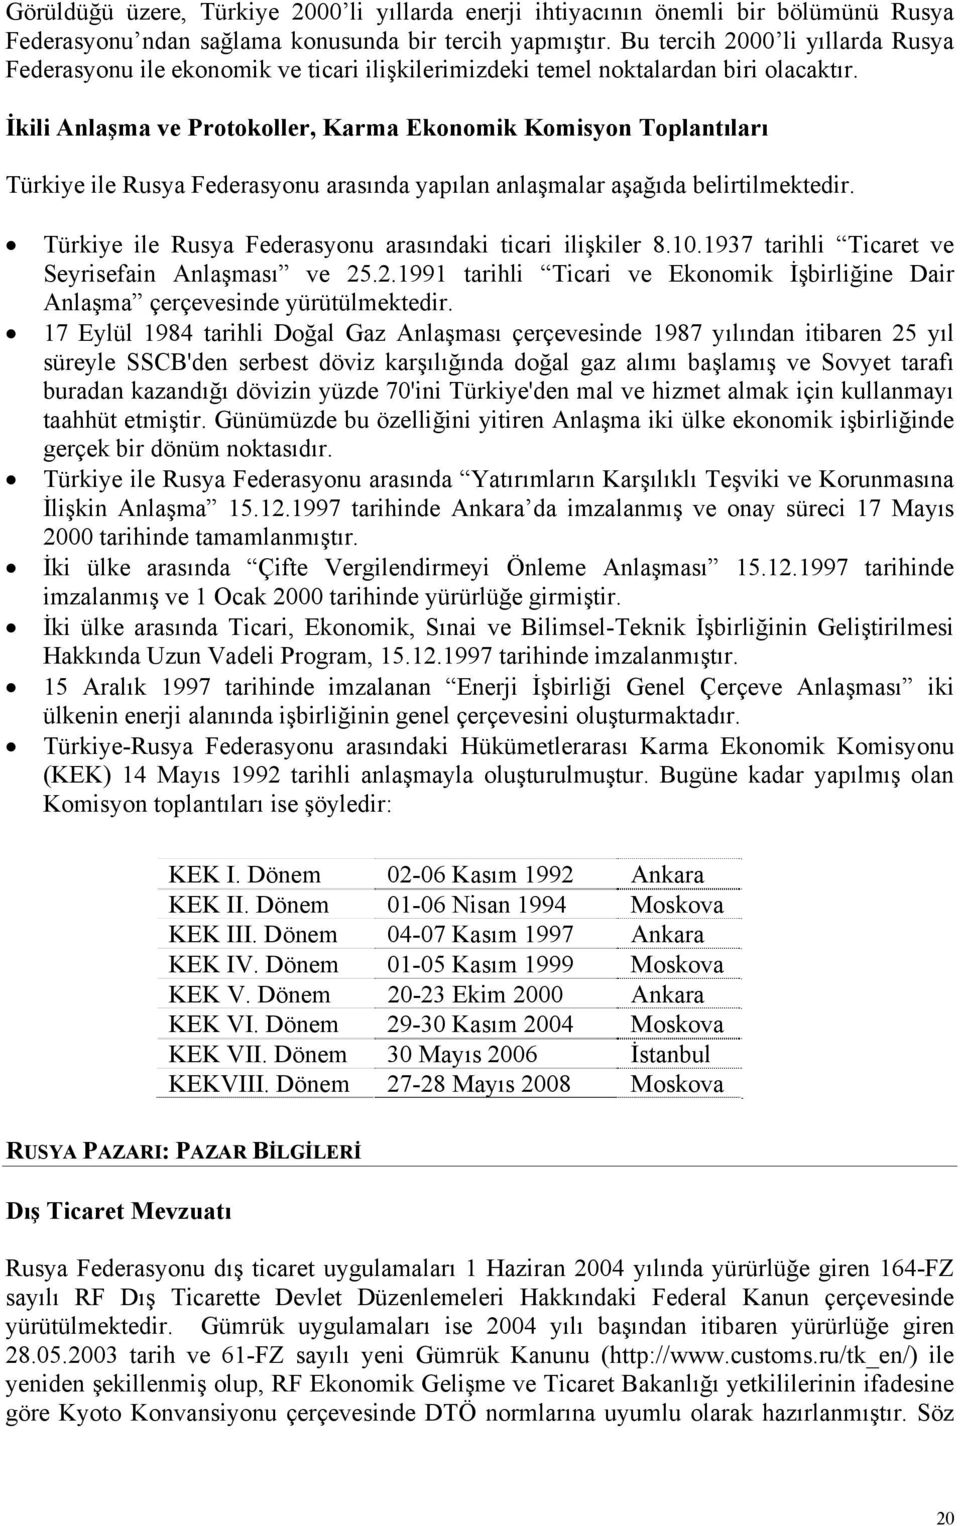 İkili Anlaşma ve Protokoller, Karma Ekonomik Komisyon Toplantıları Türkiye ile Rusya Federasyonu arasında yapılan anlaşmalar aşağıda belirtilmektedir.